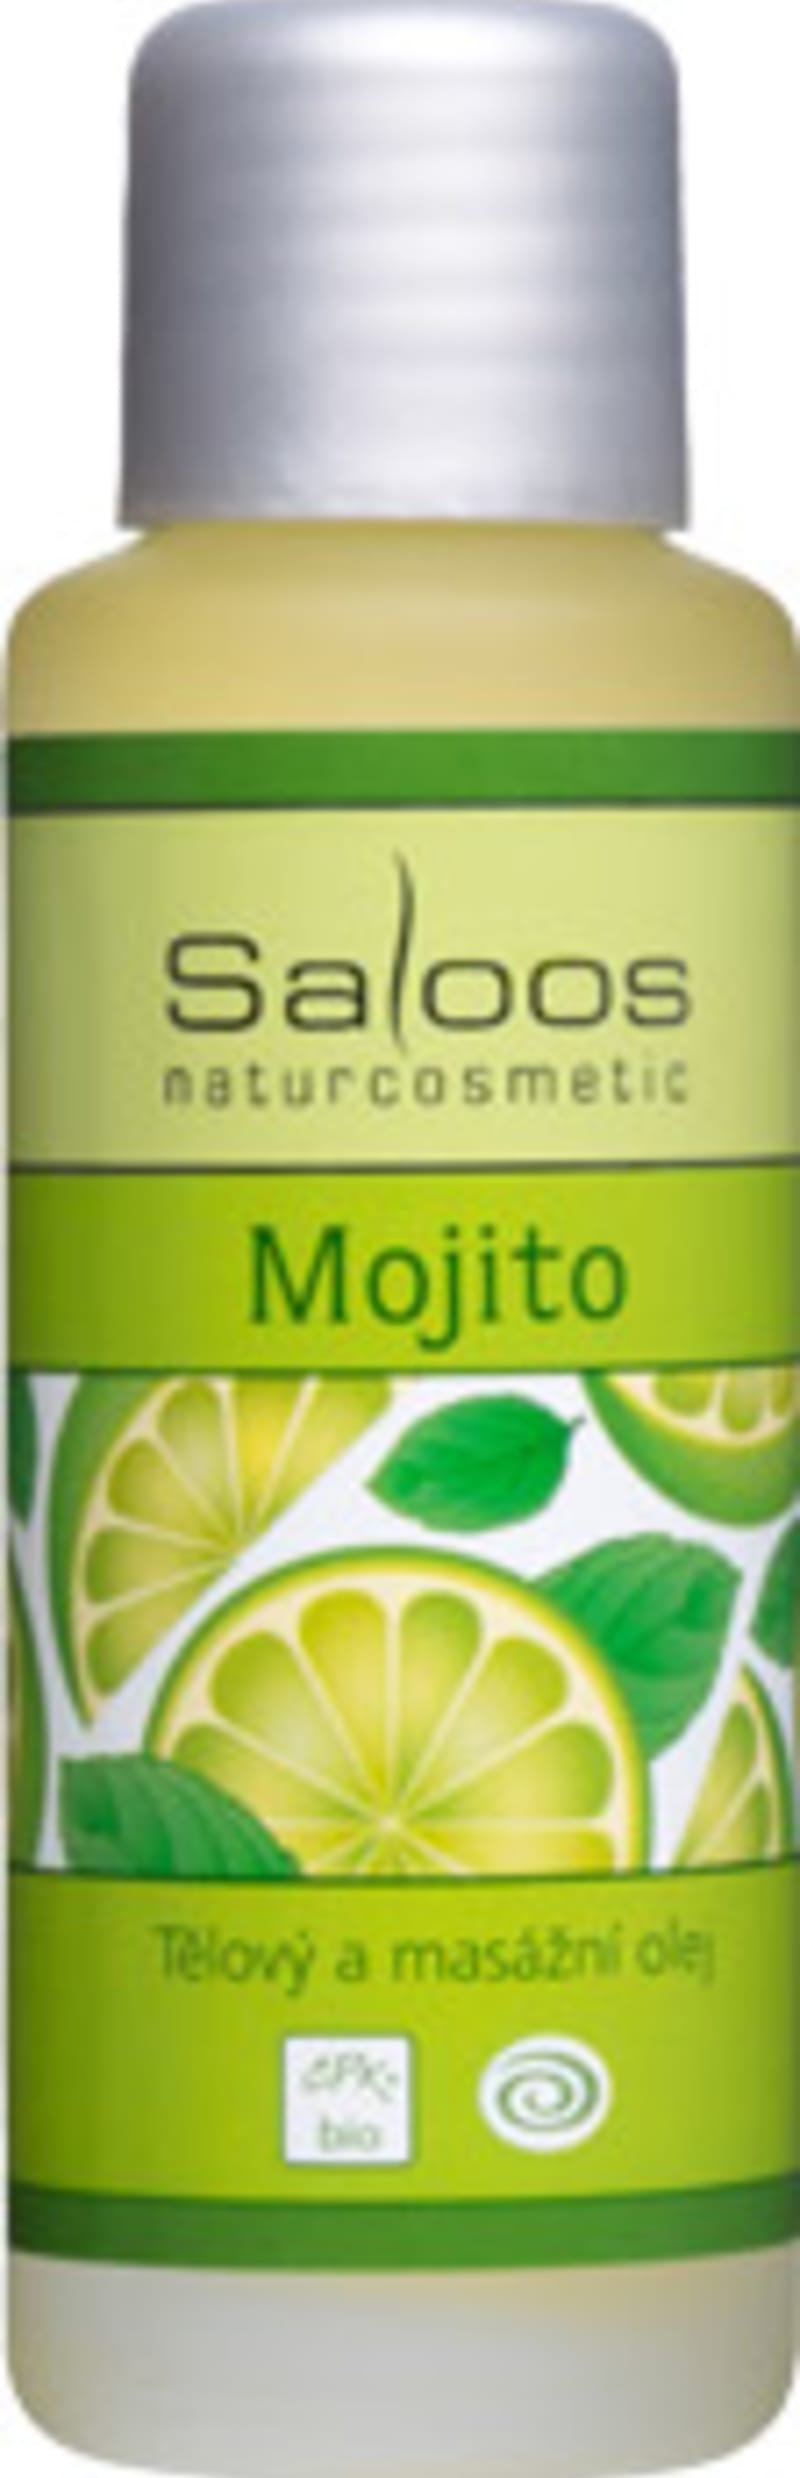 Saloos tělový a masážní olej Mojito